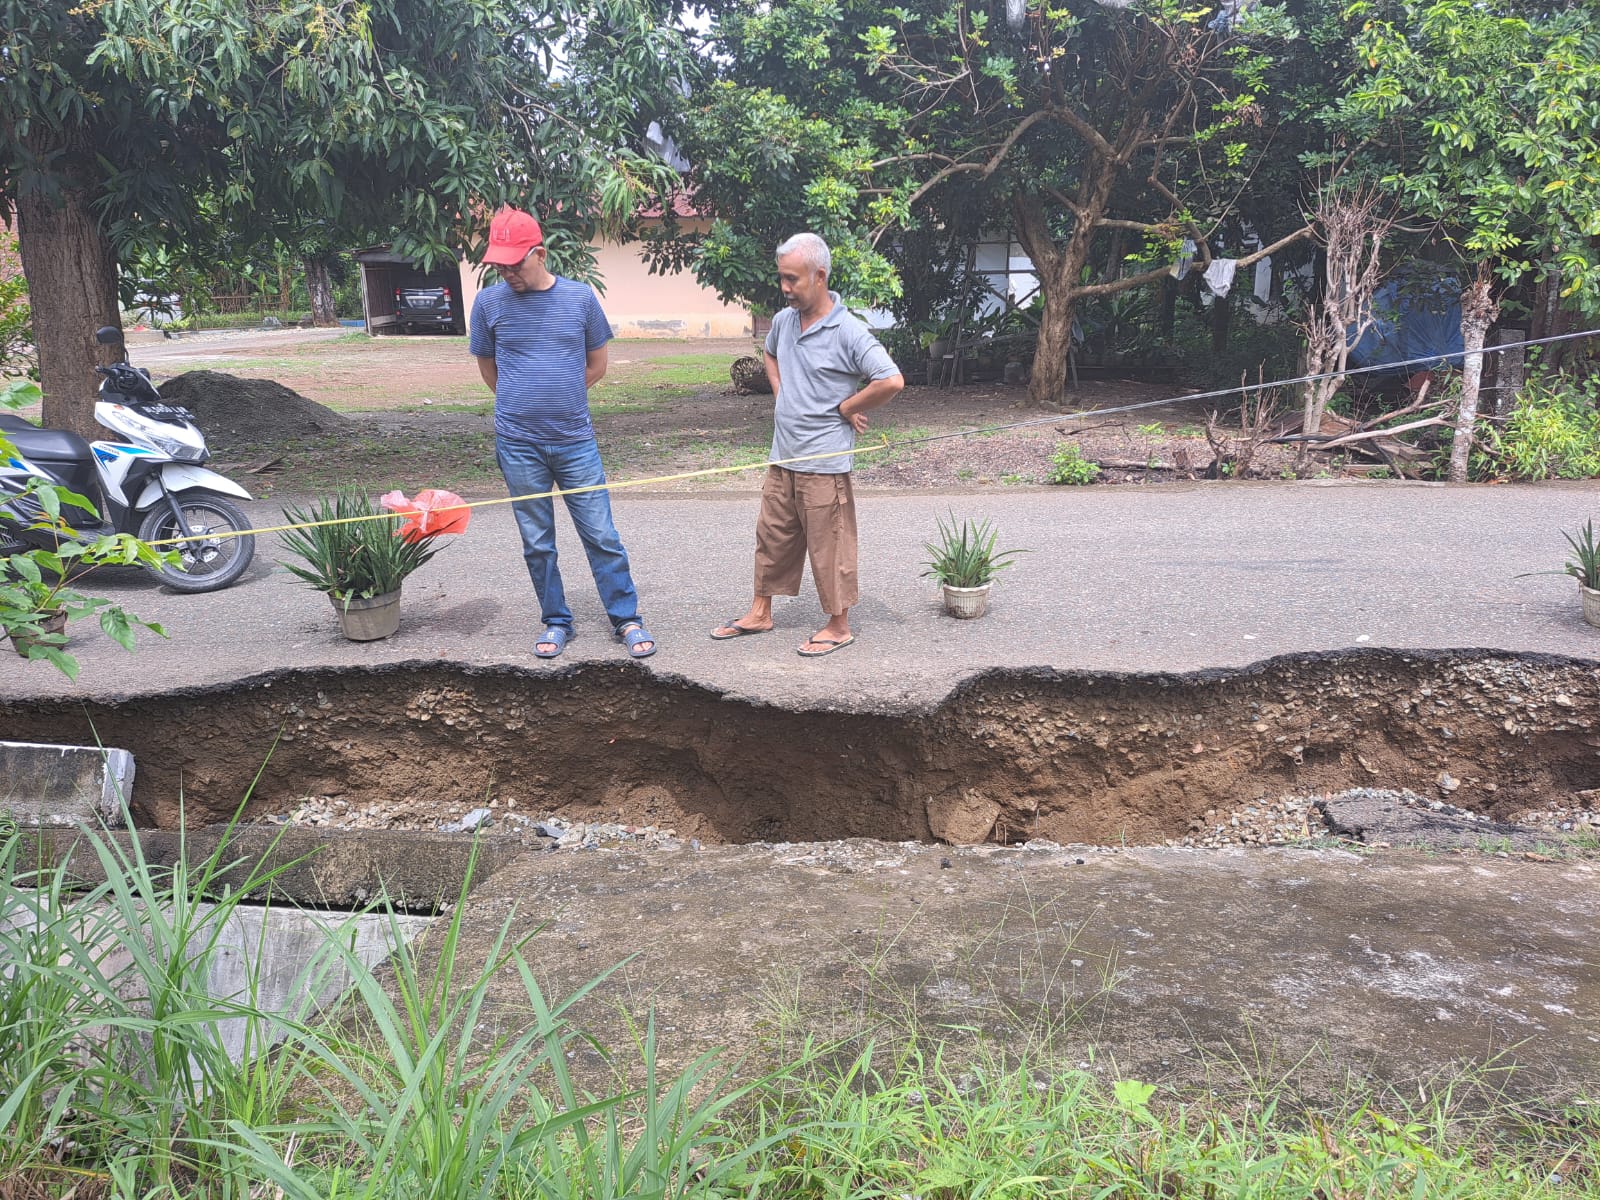 Dewan Minta Pemko Perbaiki Jalan Rusak di Gampong Ilie Ulee Kareng